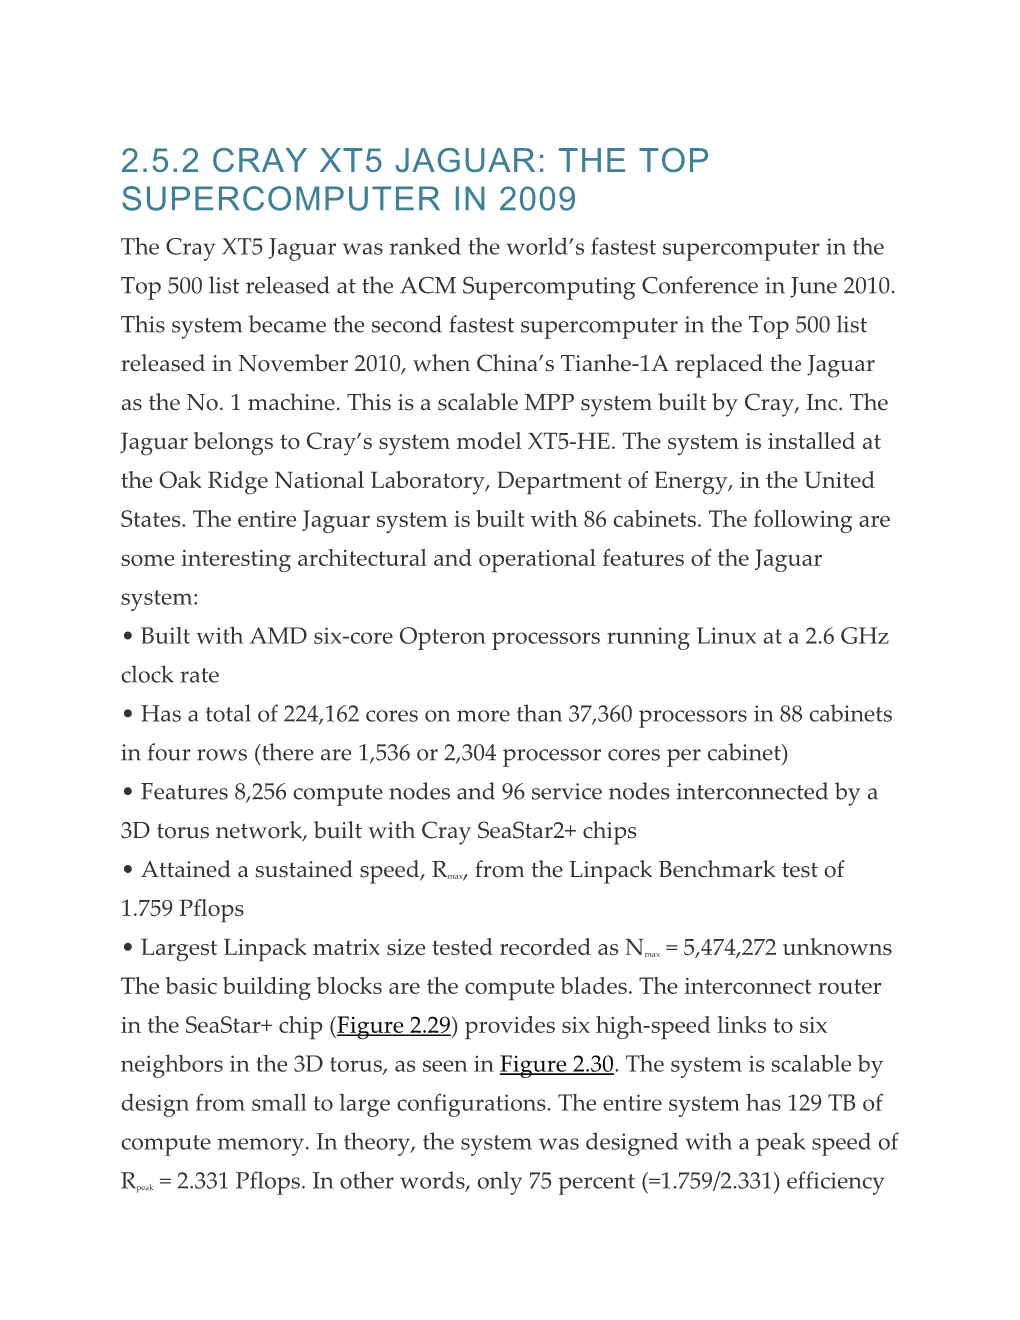 2.5.2 Cray Xt5 Jaguar: the Top Supercomputer in 2009